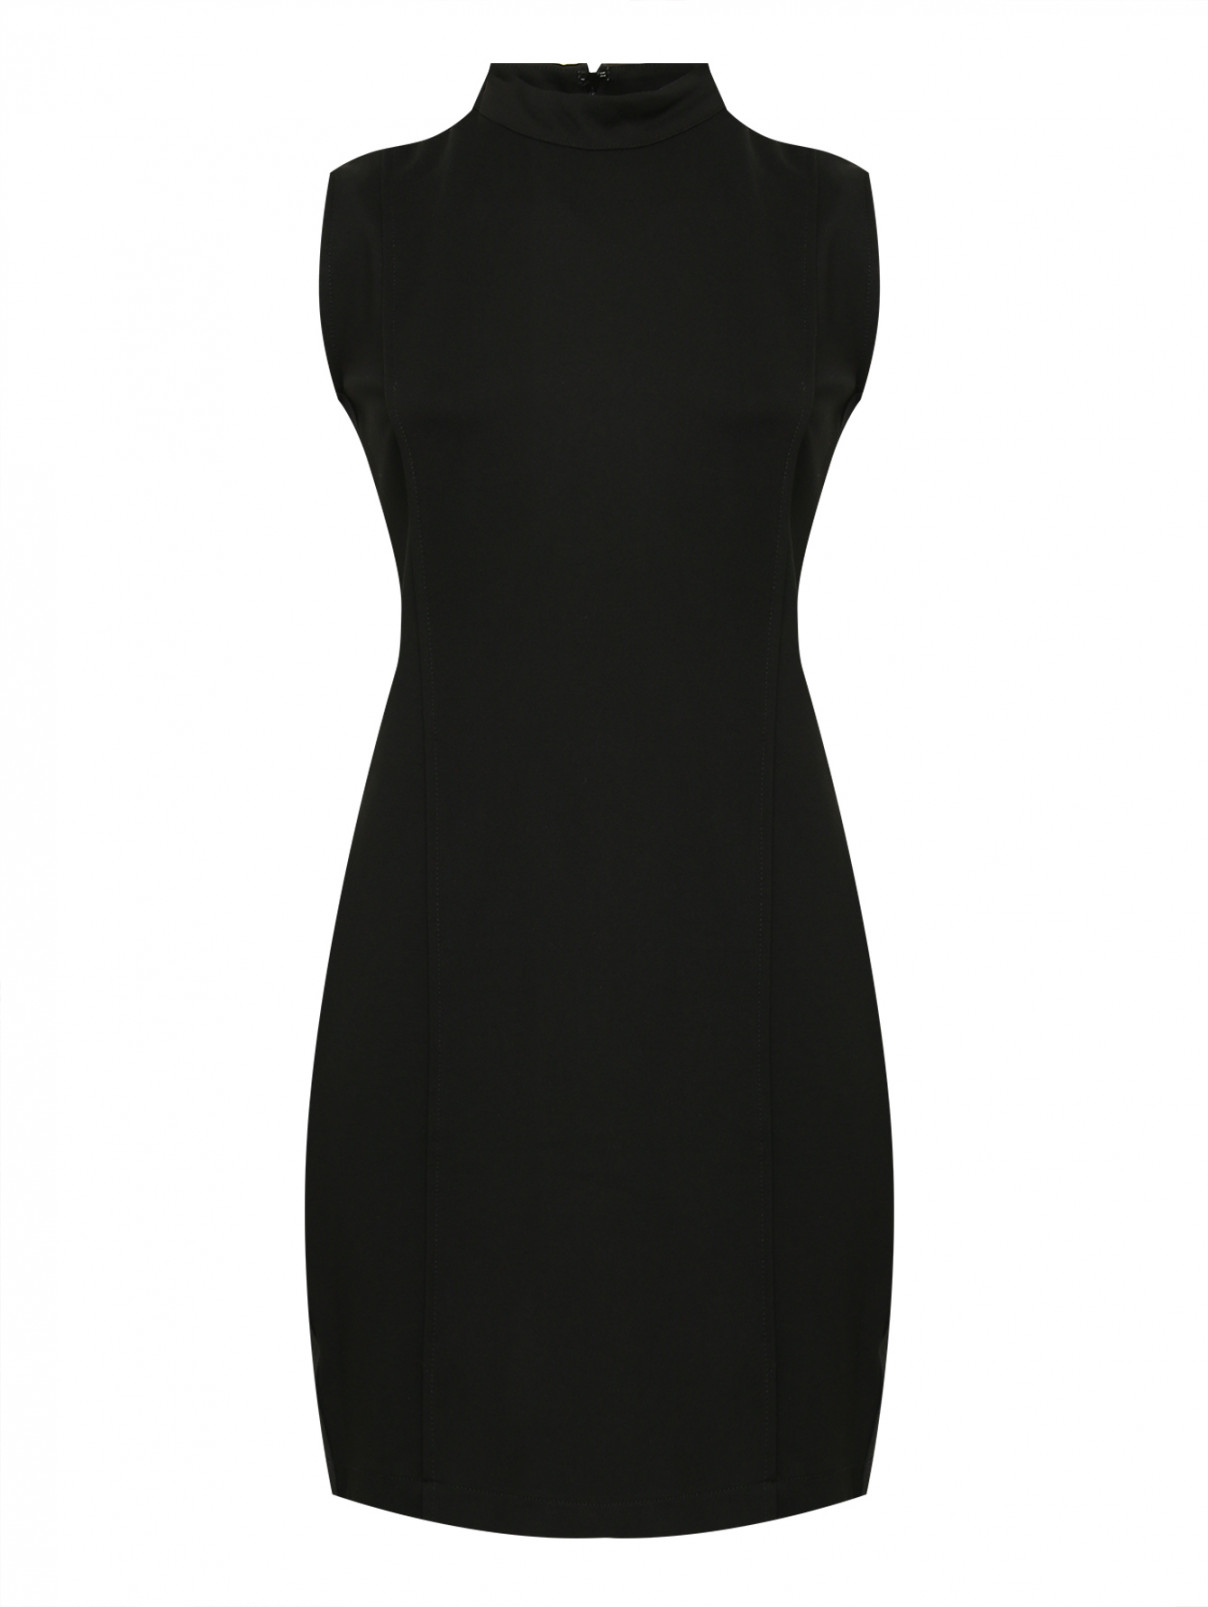 Трикотажное платье с рельефными швами Guess  –  Общий вид  – Цвет:  Черный